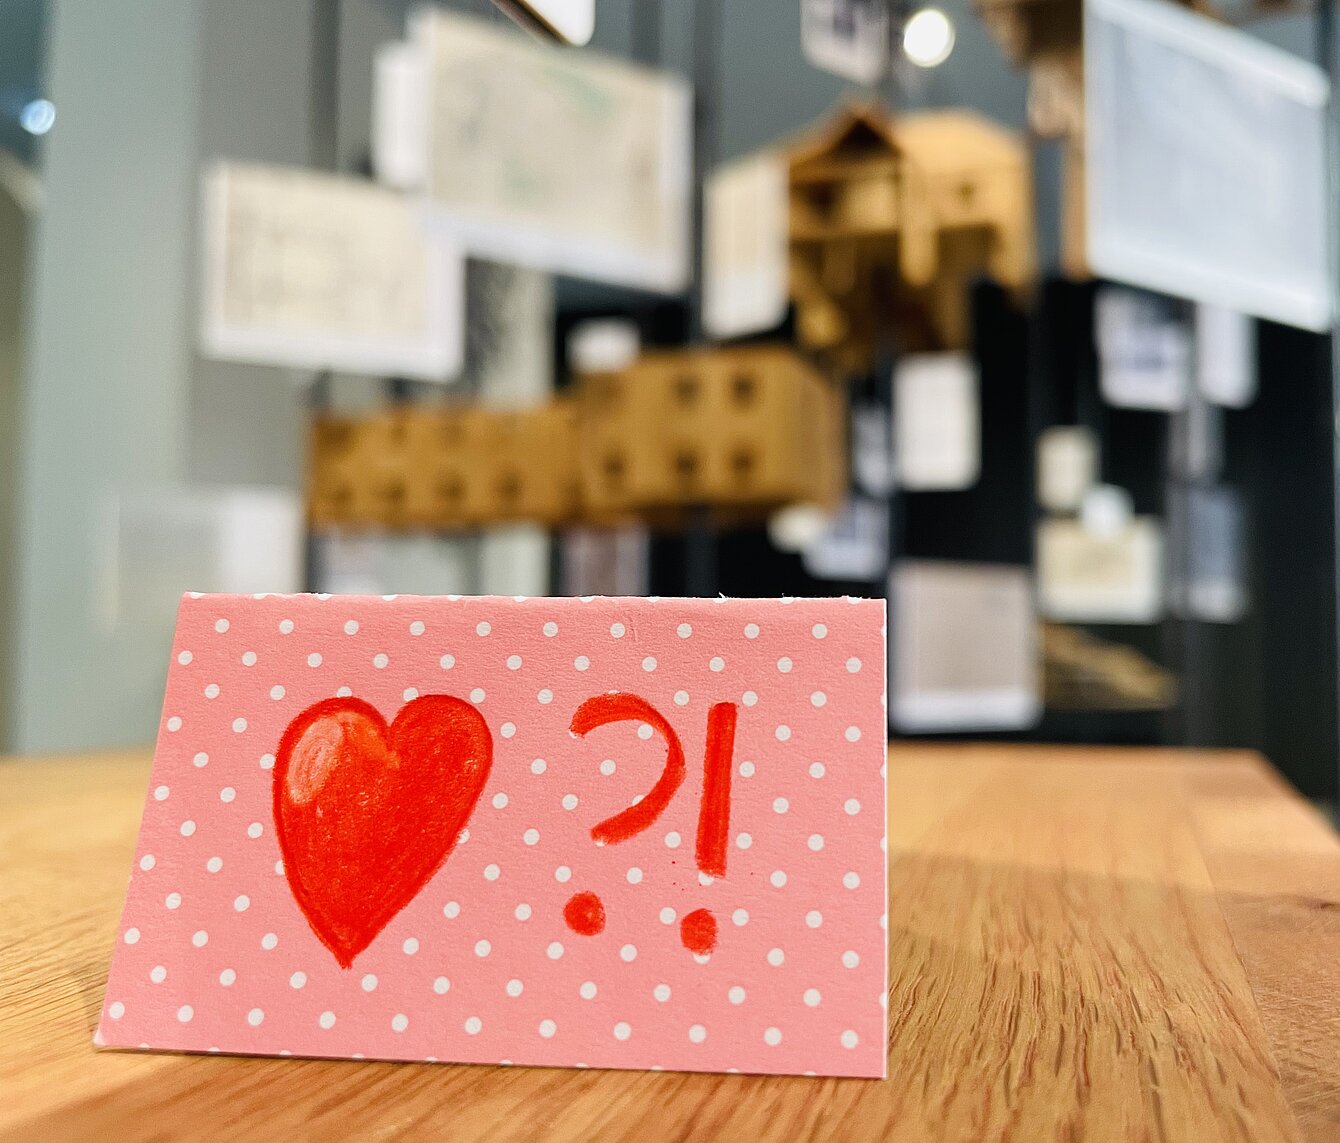 Zu sehen ist ein rosarotes Kärtchen mit einem roten Herz darauf in ersten Ausstellungsbereich. Im Hintergrund sind Museumsmodell aus Holz zu erkennen. 